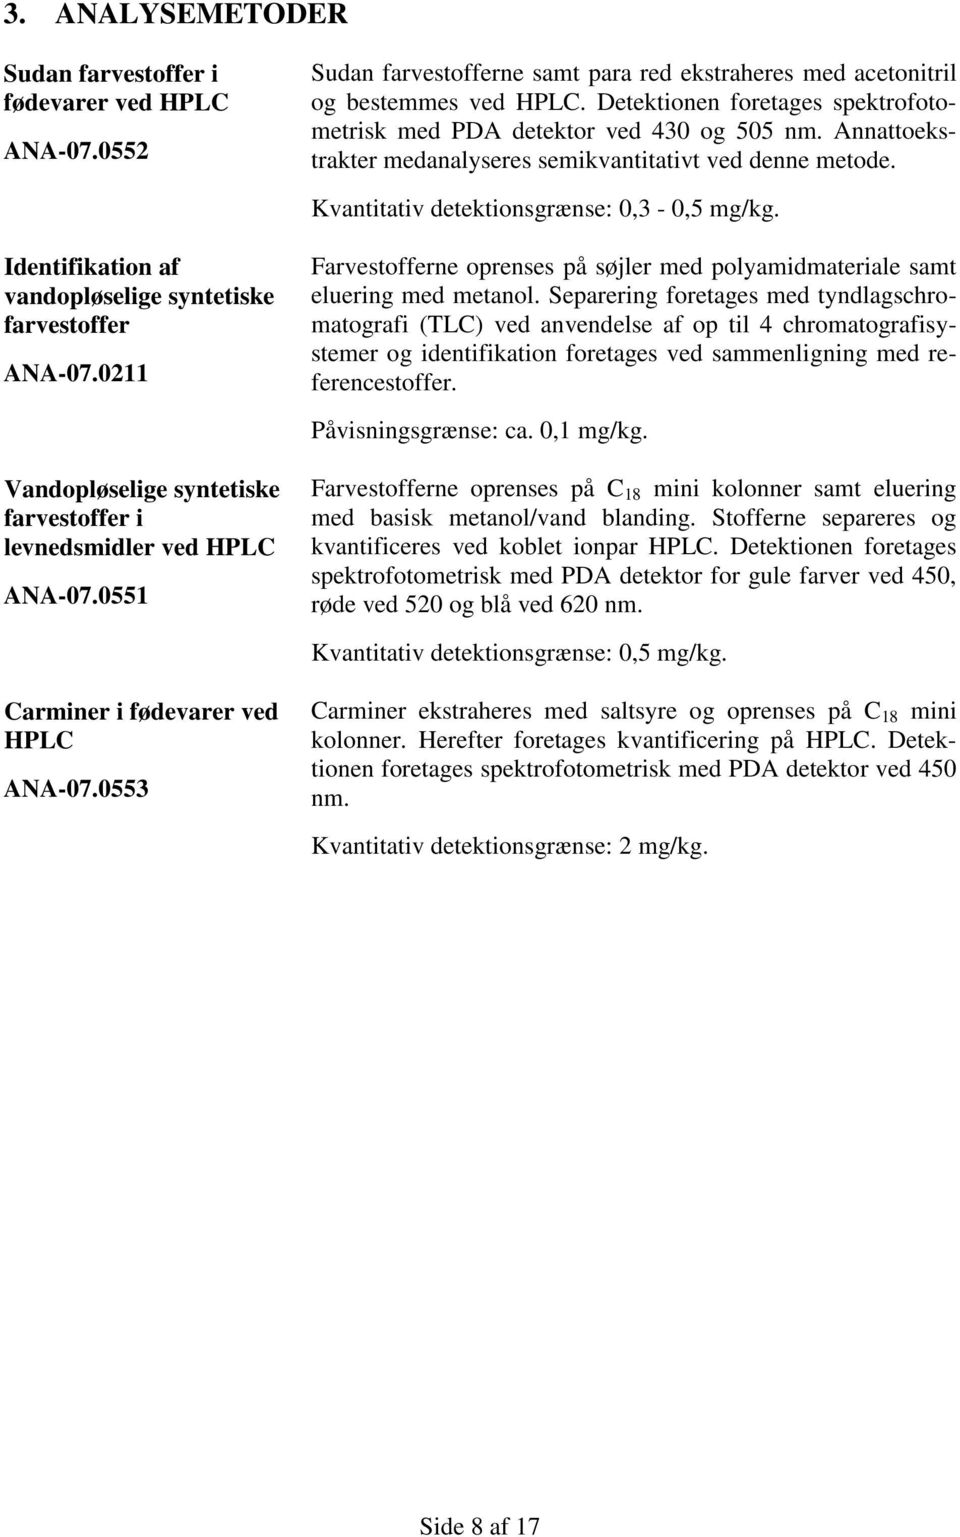 Identifikation af vandopløselige syntetiske farvestoffer ANA-07.0211 Farvestofferne oprenses på søjler med polyamidmateriale samt eluering med metanol.